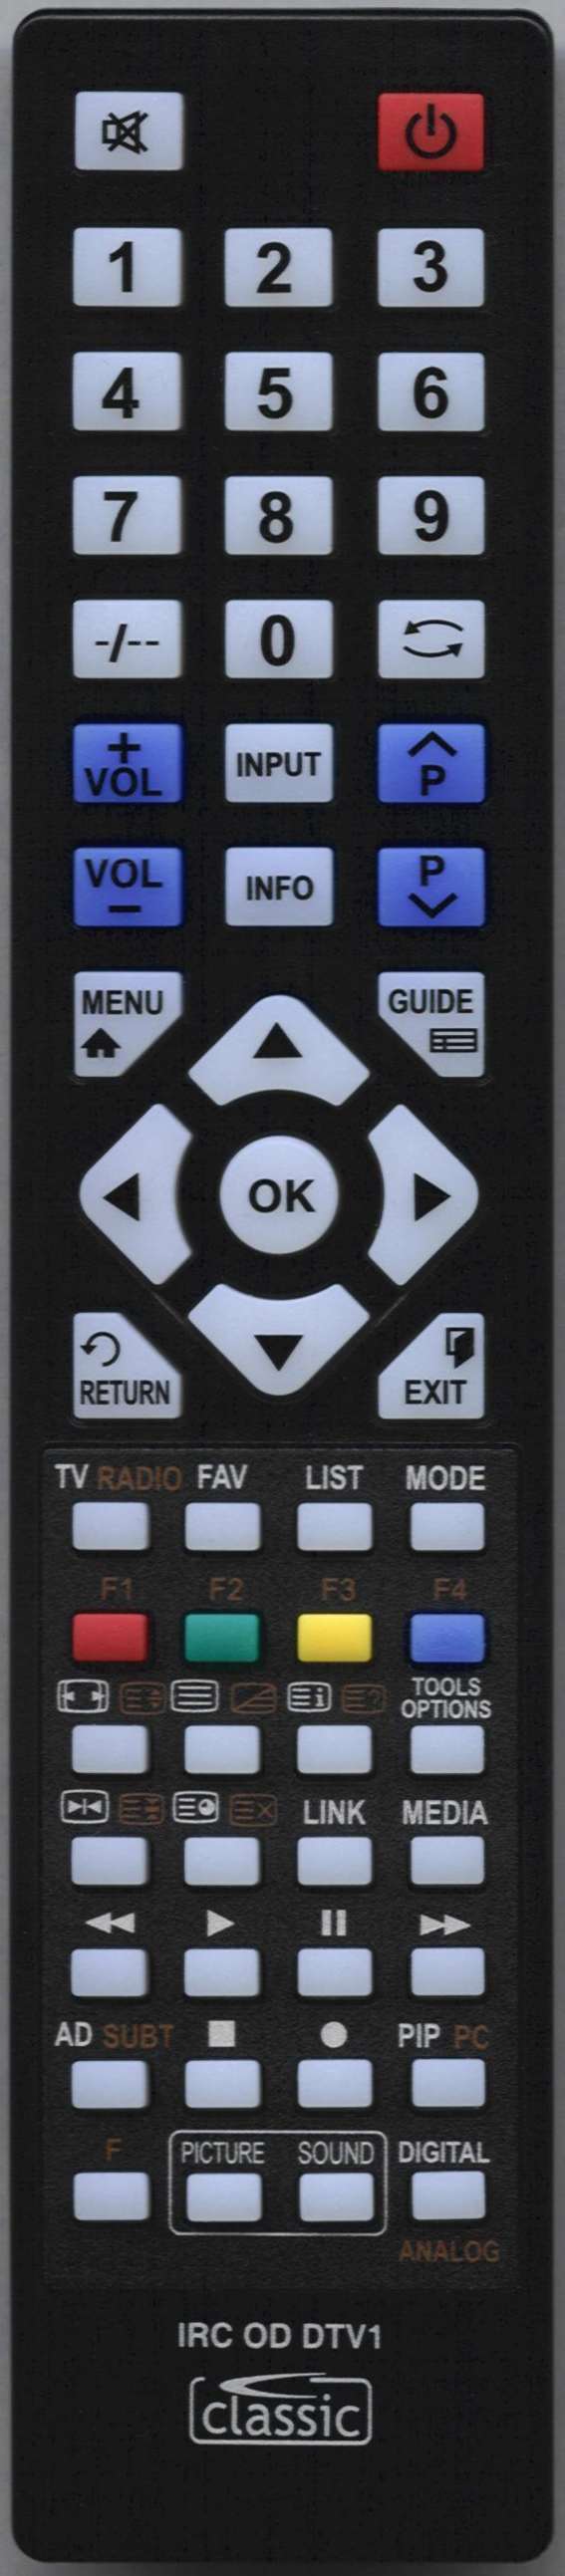 LUXOR 3390 VT Remote Control